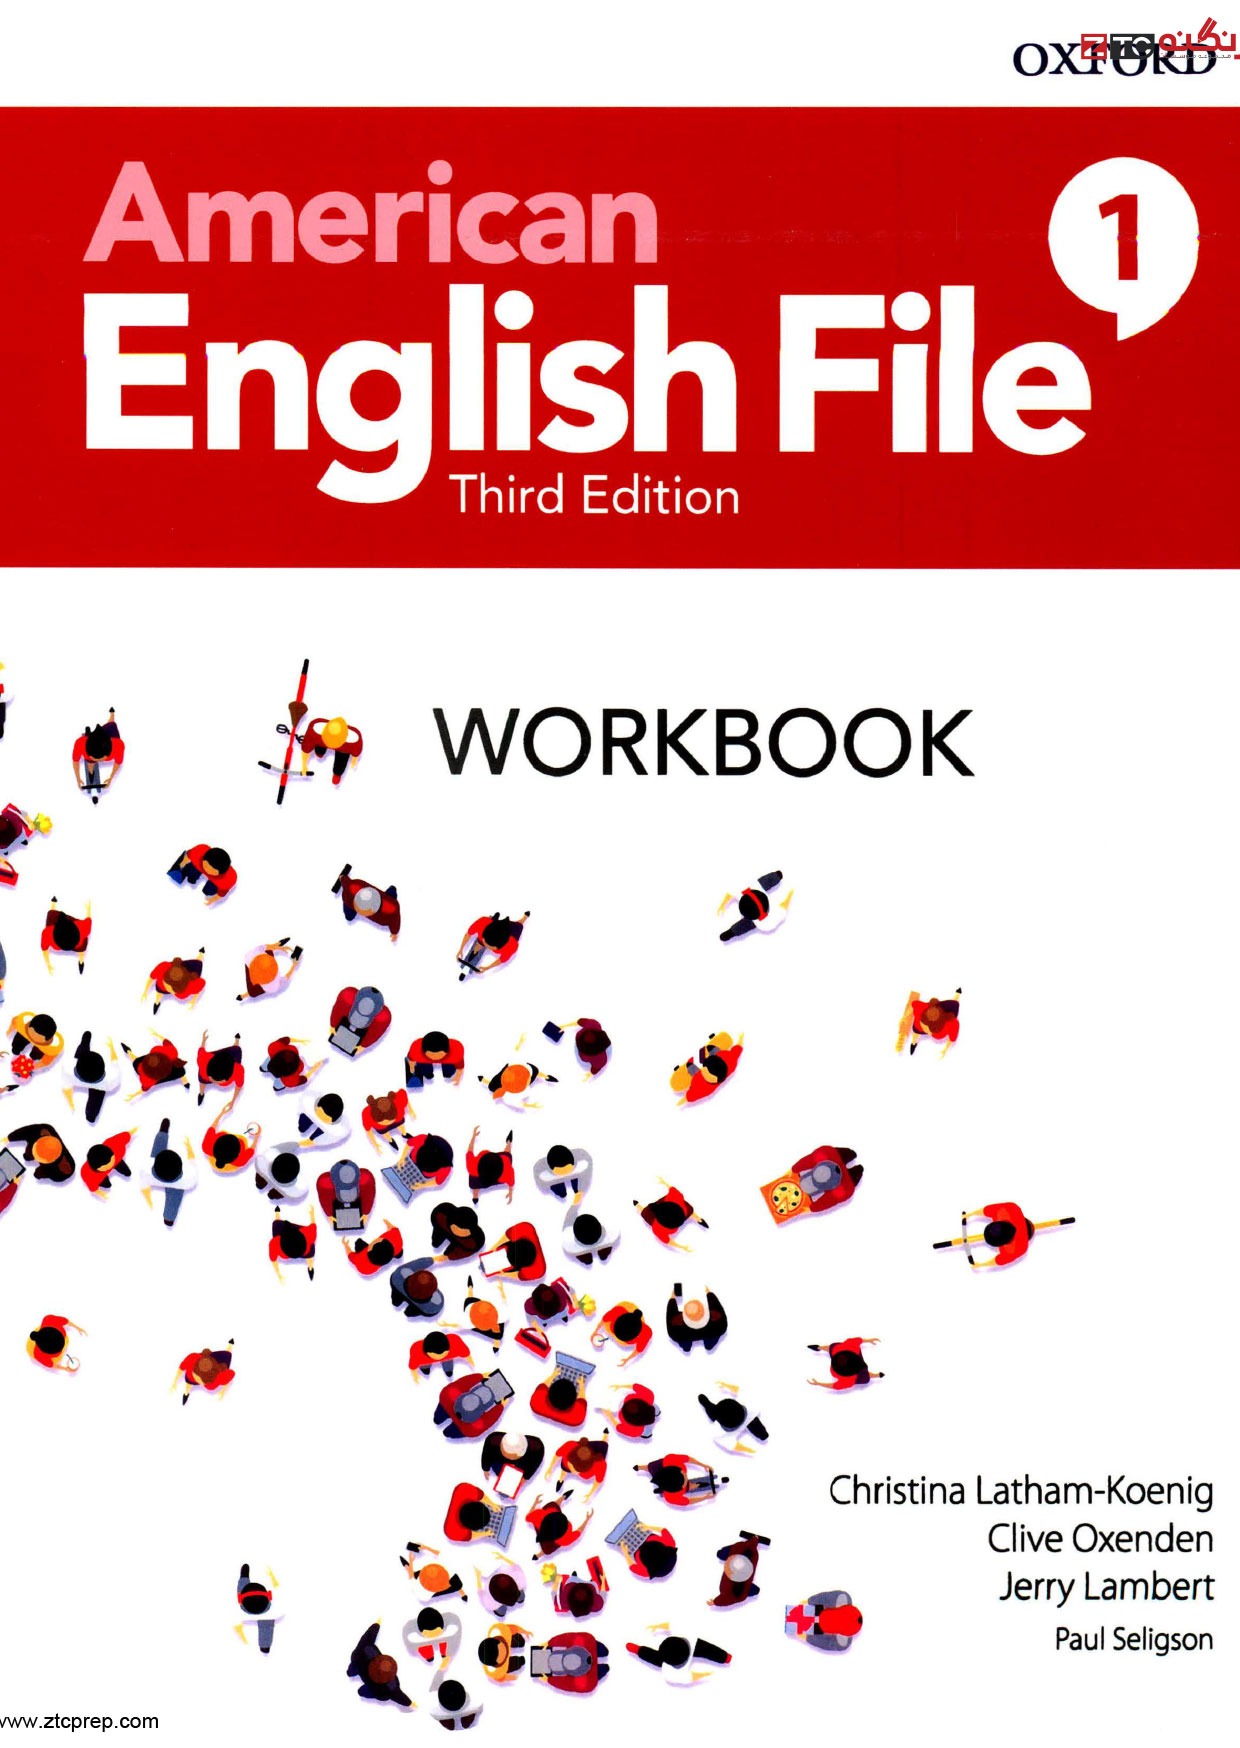 American English File 1 Work Book ویرایش سوم